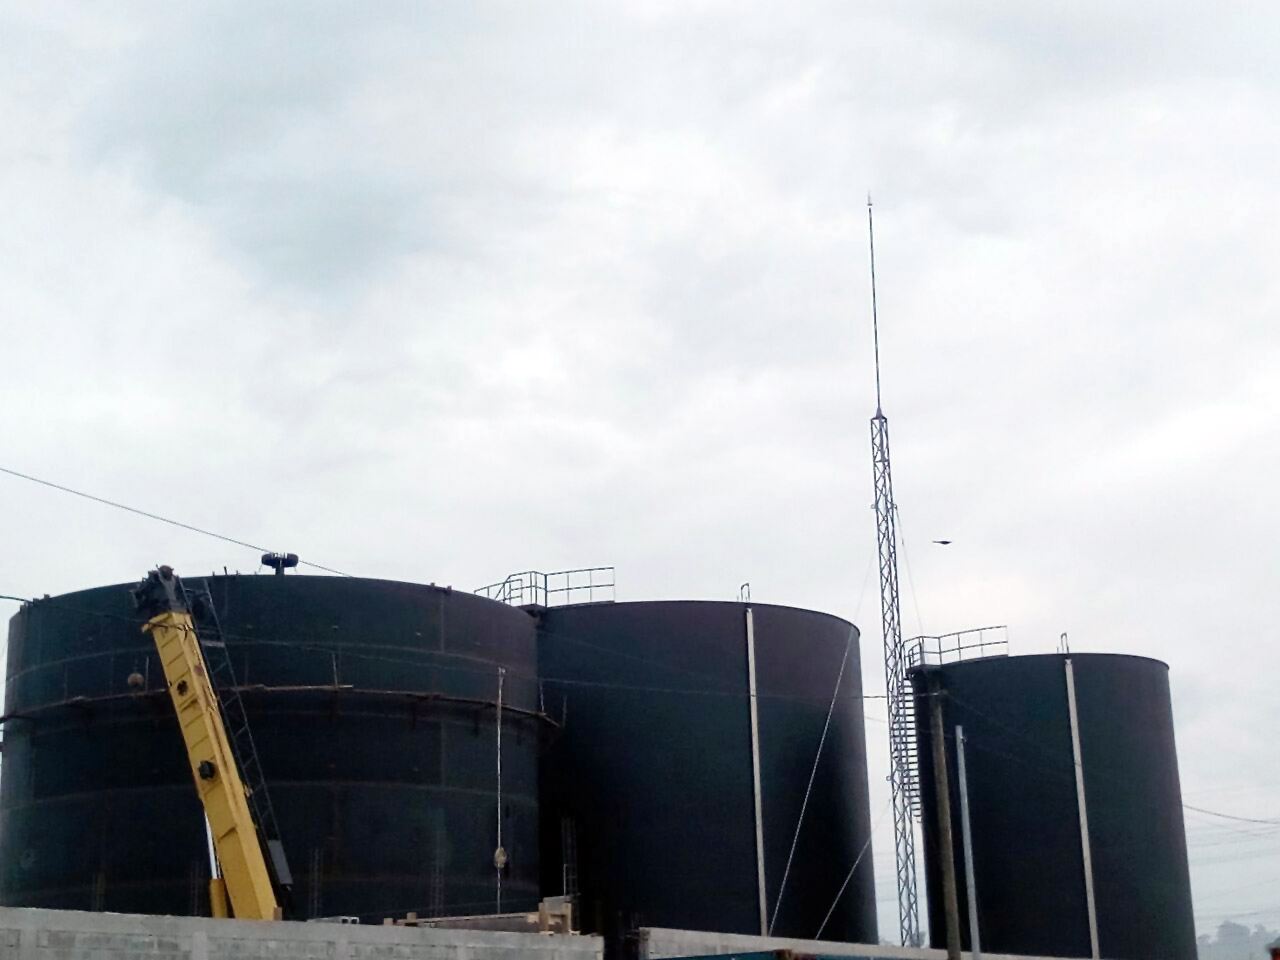 Aplicaciones Tecnológicas protege com os seus para-raios os tanques de armazenamento de óleo da Guatemala